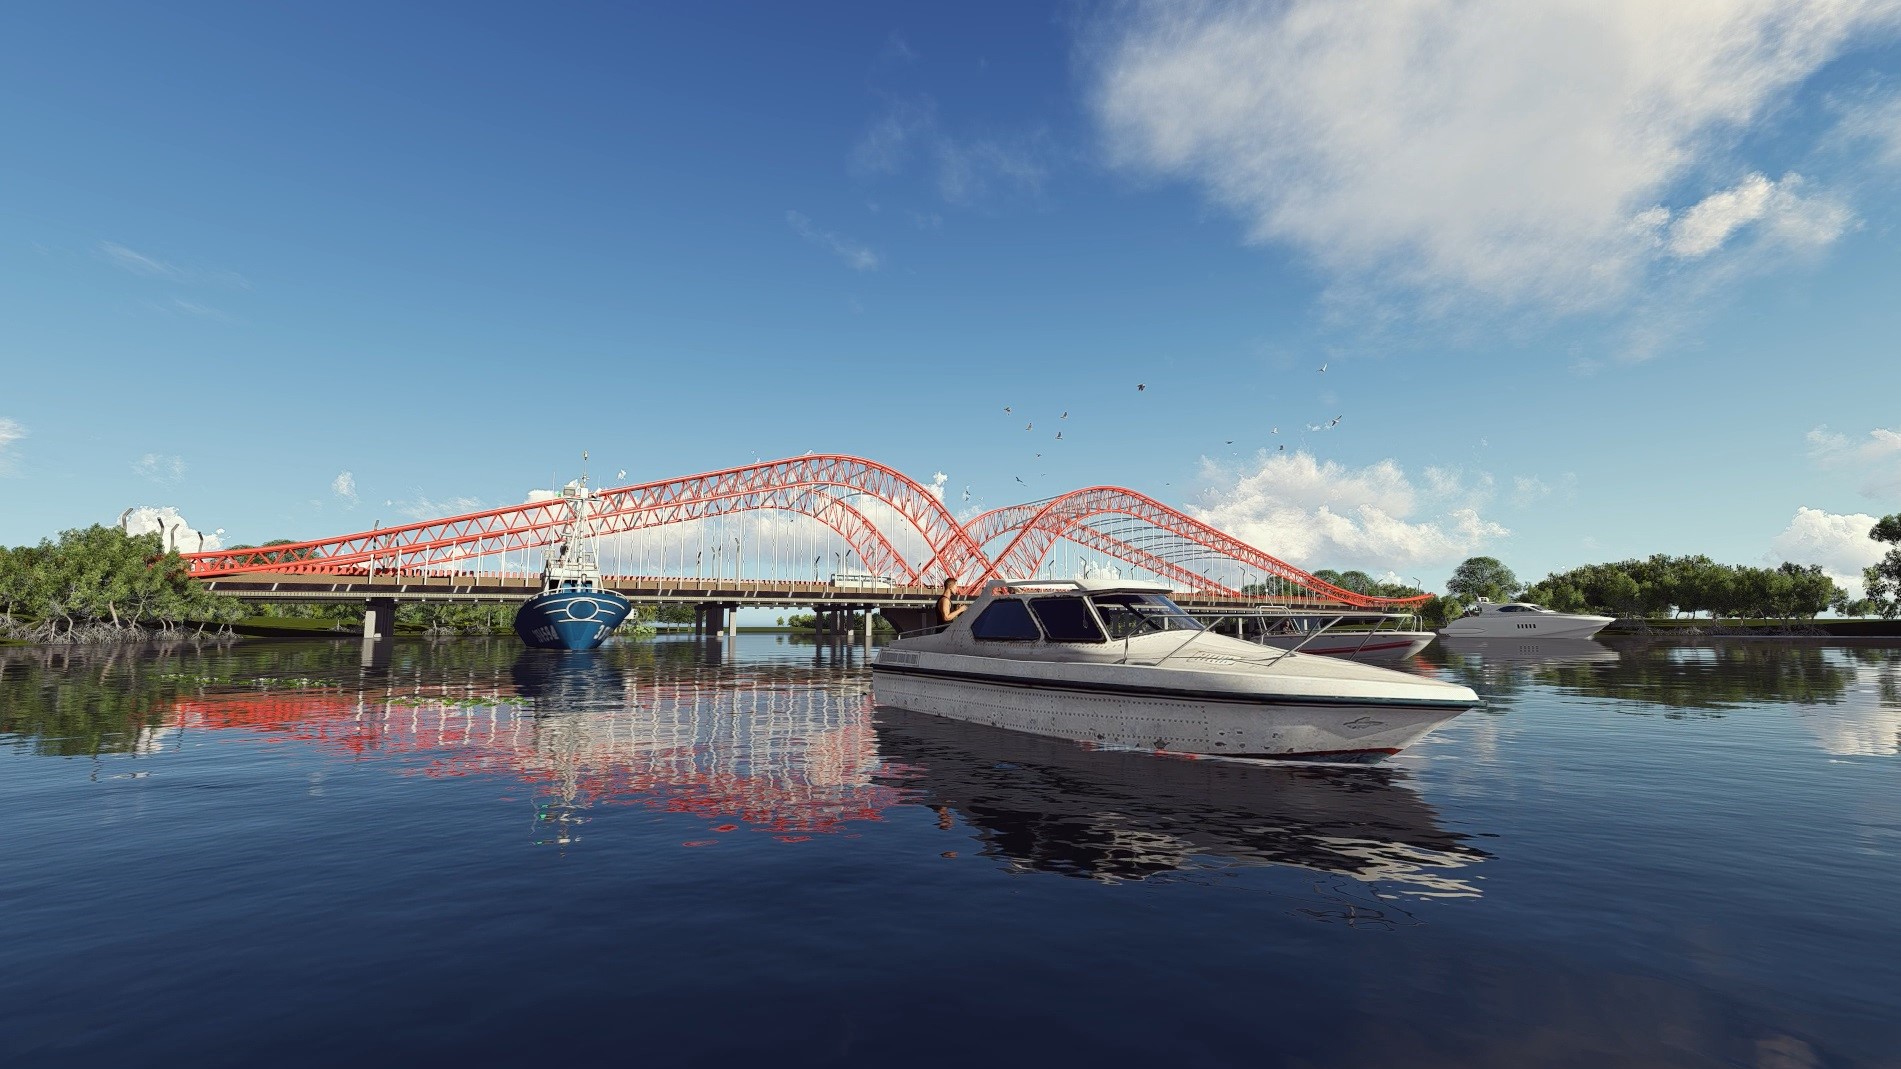 Việc chỉnh trang cầu Cỏ May theo thiết kế trên nhằm tạo điểm nhấn kiến trúc tiêu biểu cho vị trí kết nối quan trọng giữa hai thành phố Vũng Tàu và Bà Rịa, nâng cao hiệu quả và khai thác tiềm năng du lịch, góp phần phát triển kinh tế-xã hội. Ảnh: BQLDA